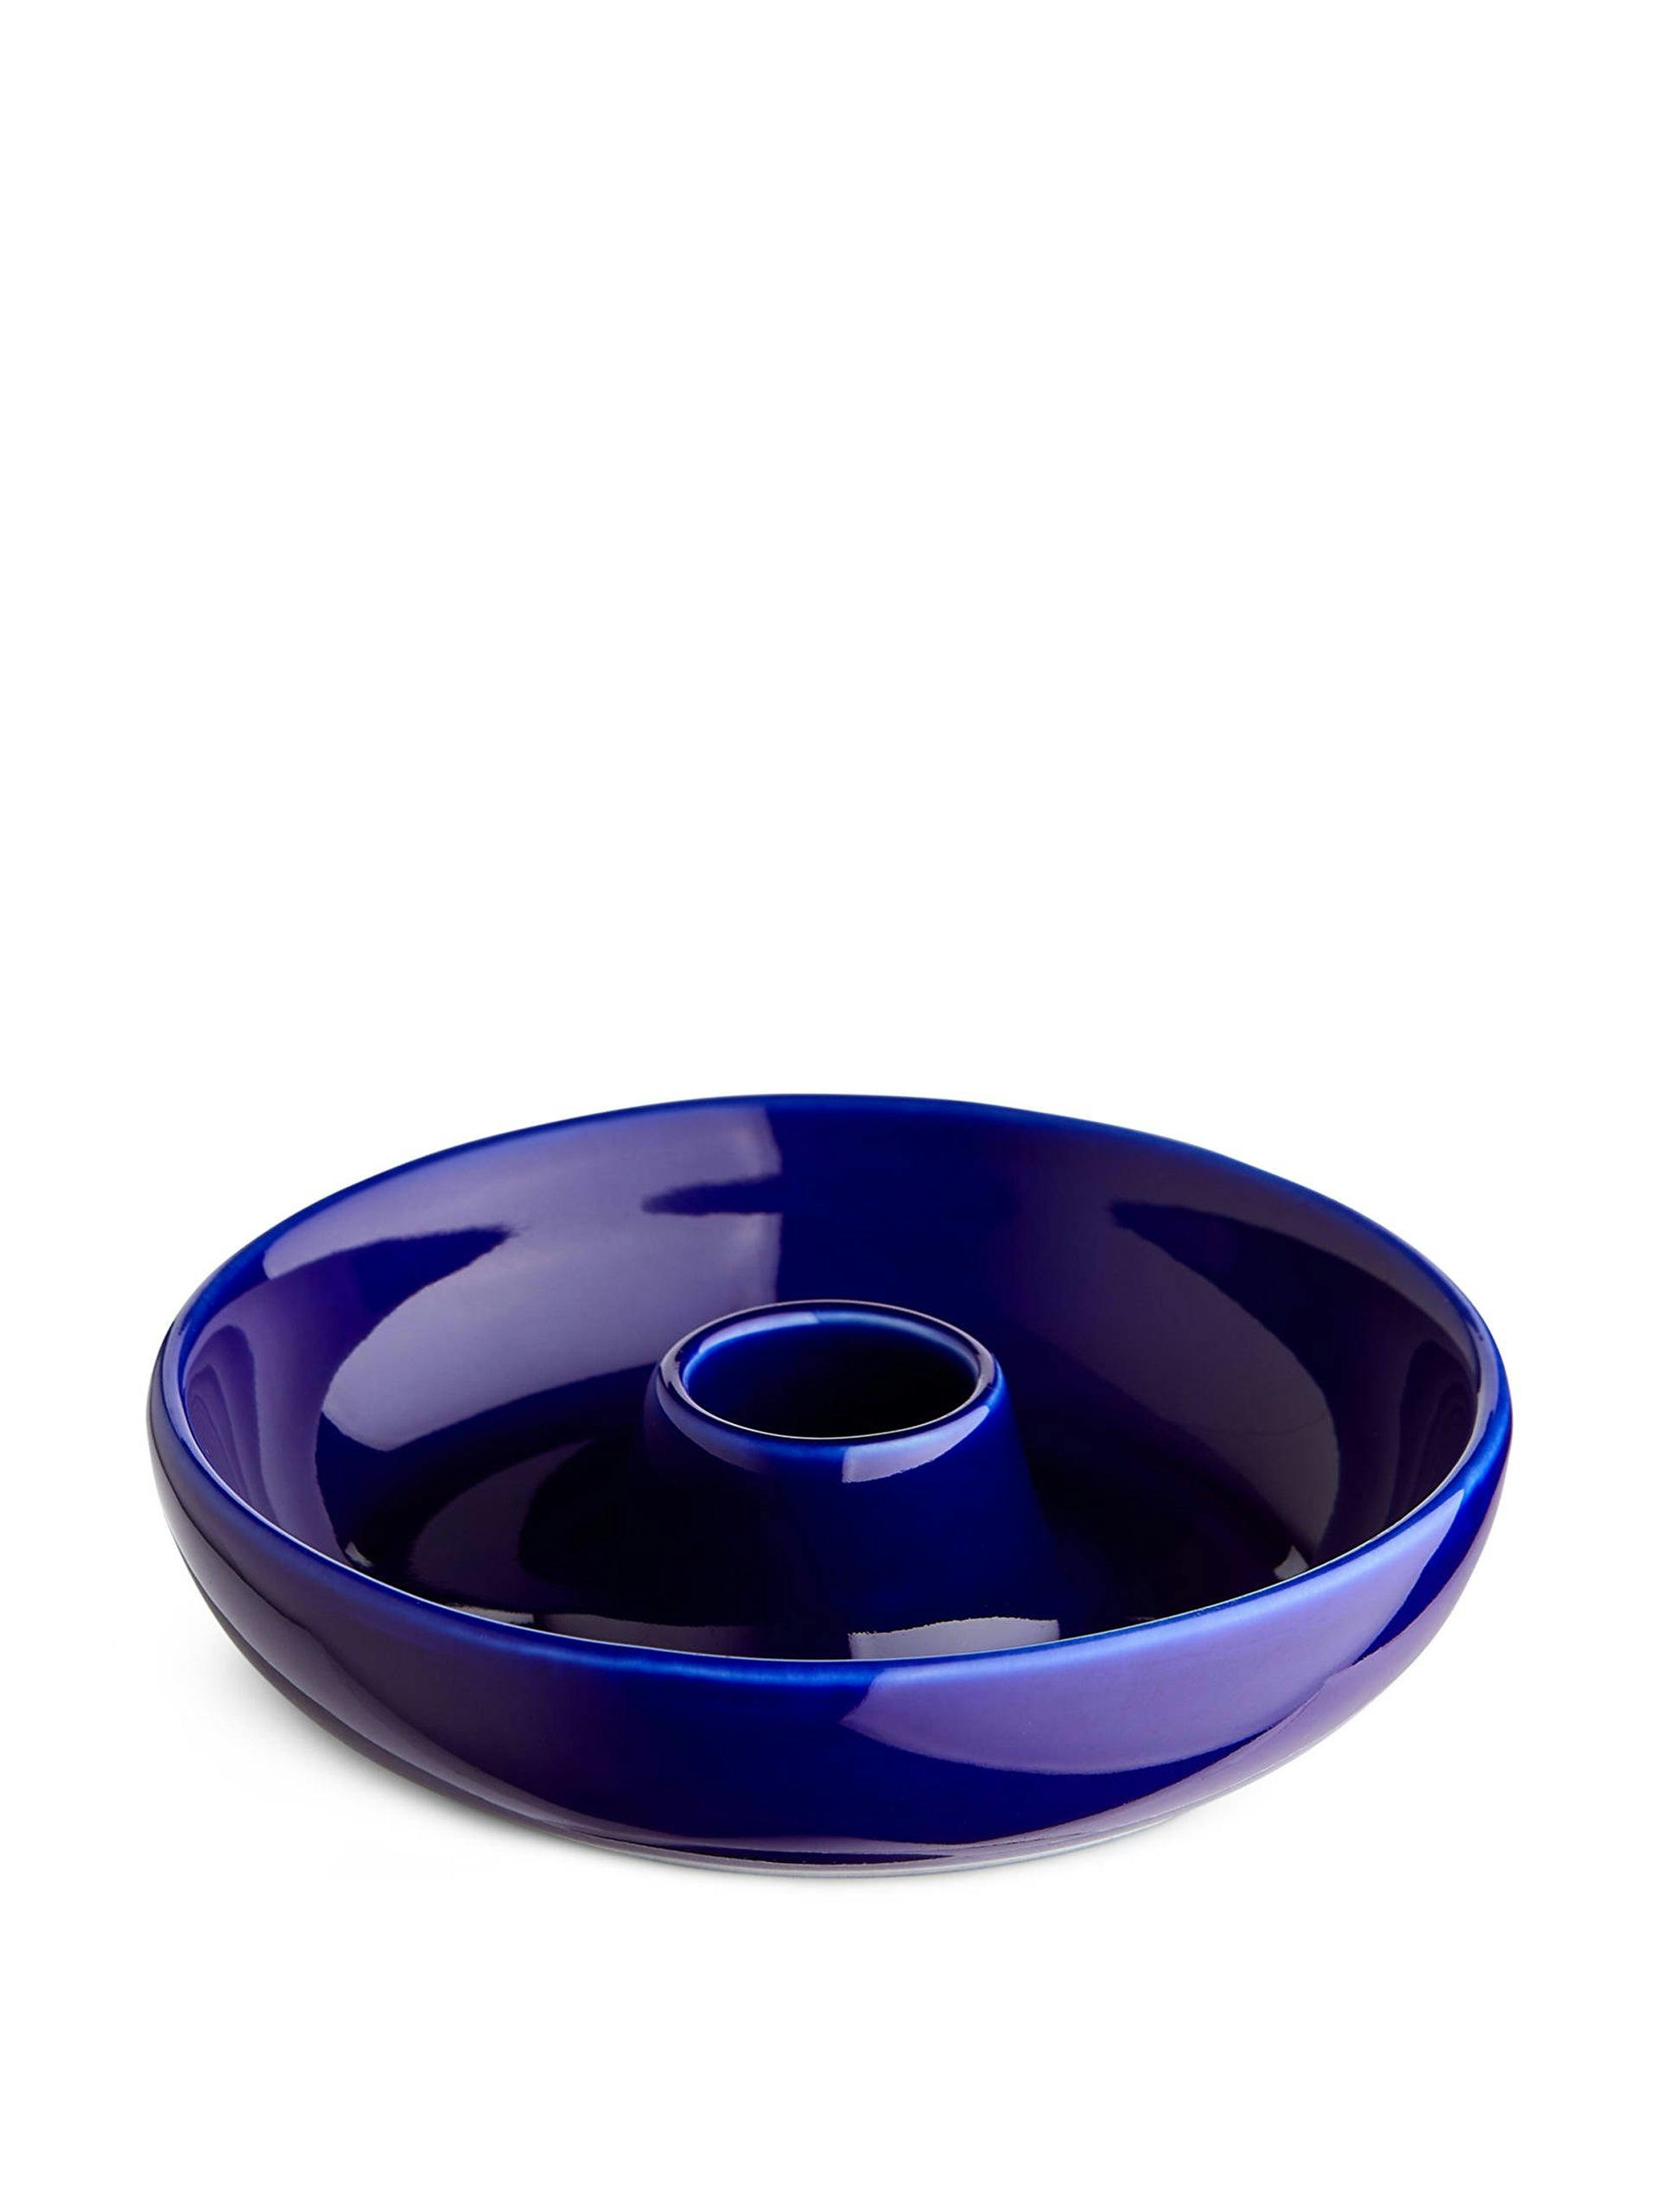 Blue stoneware candle holder